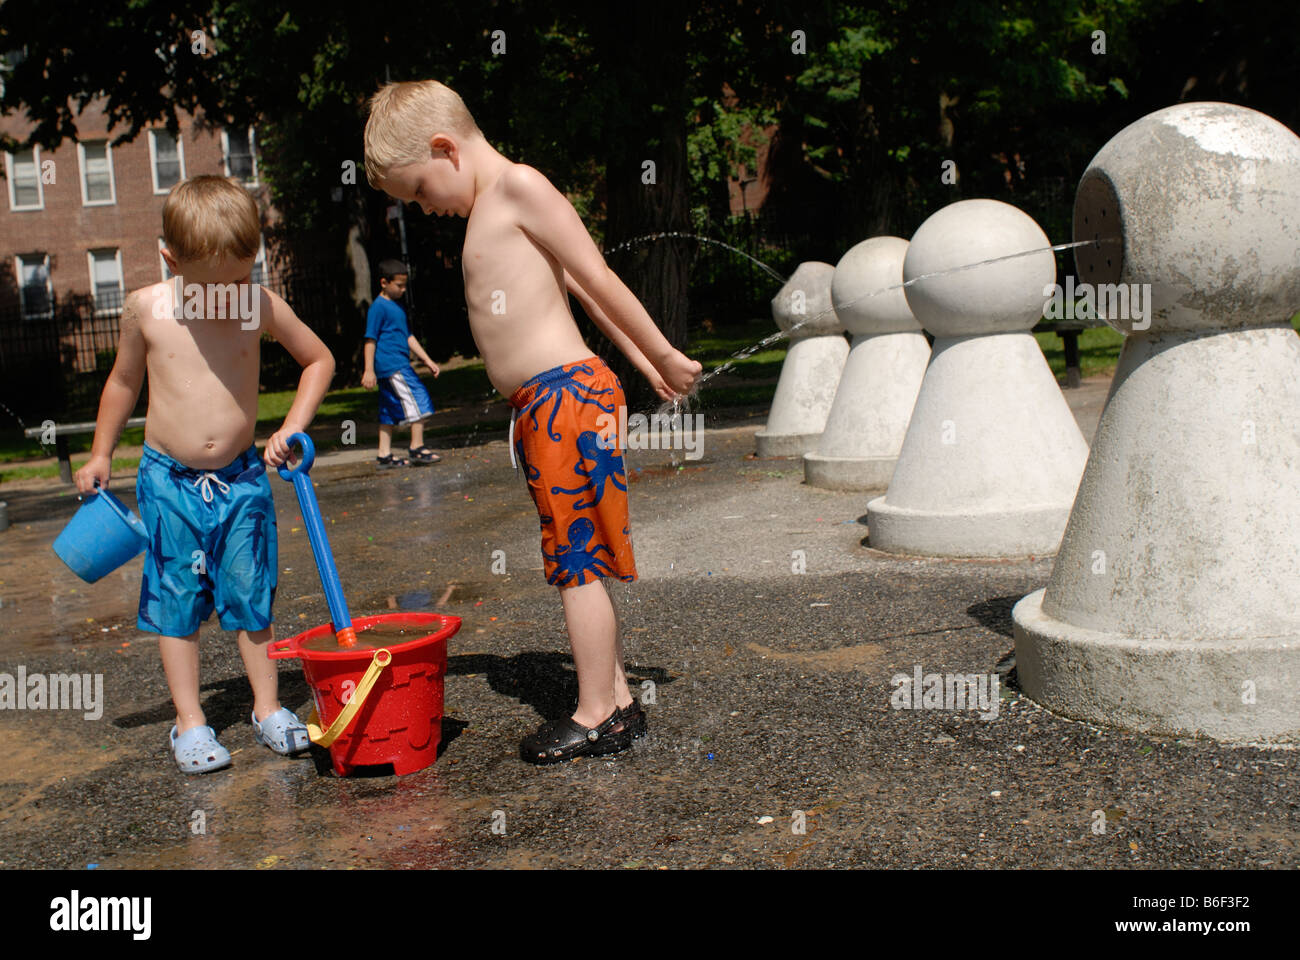 Zwei Nackten Oberkörper Jungen Genießen Spielplatz Sprinkler An Einem